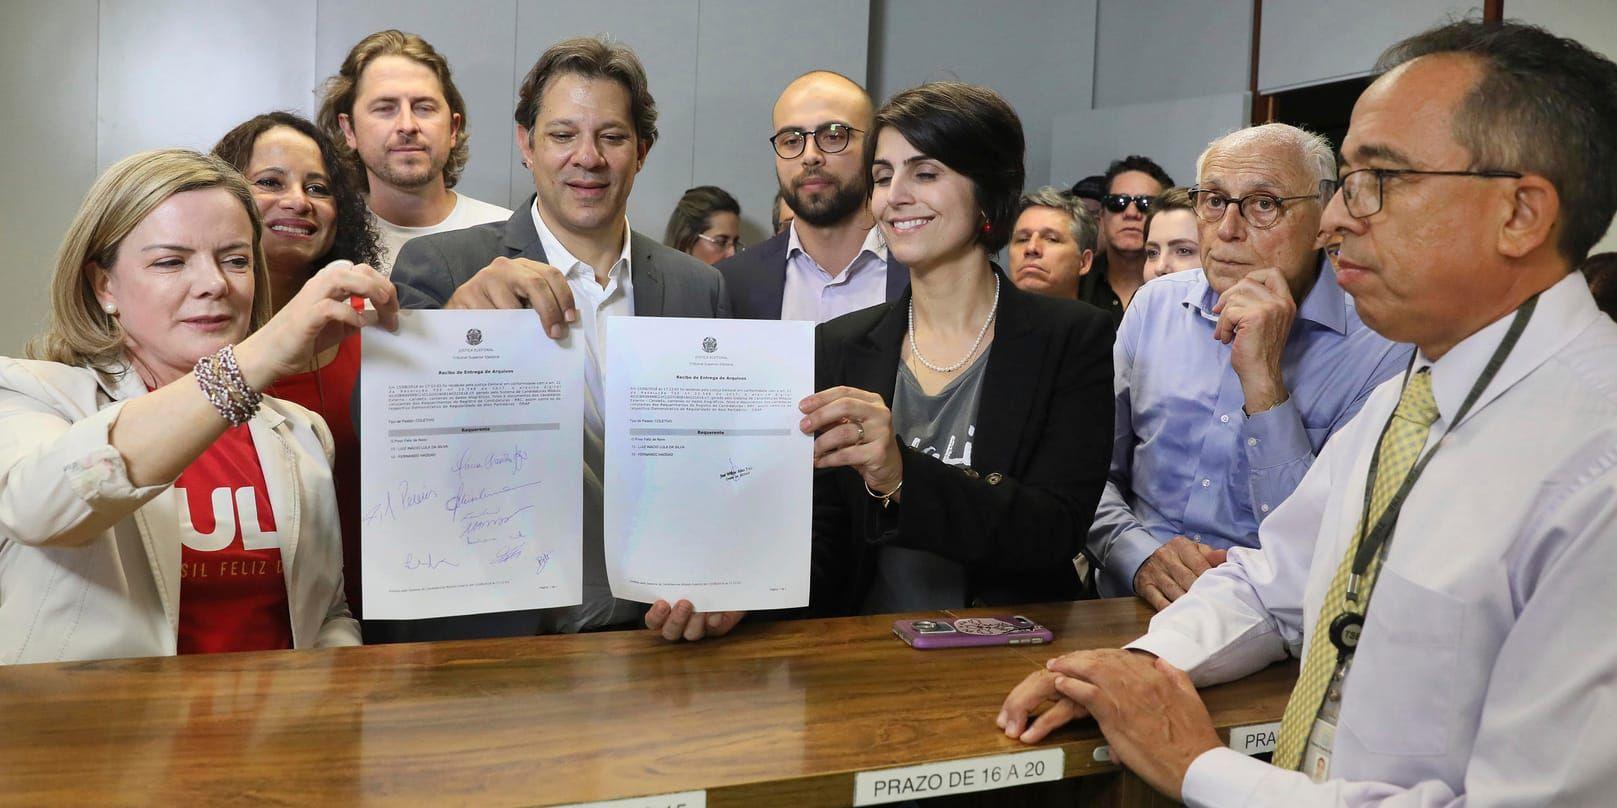 Arbetarpartiets ordförande Gleisi Hoffmann, längst till vänster, visar tillsammans med partivänner upp registreringsdokumenten för presidentkandidaten Lula da Silva på onsdagen.